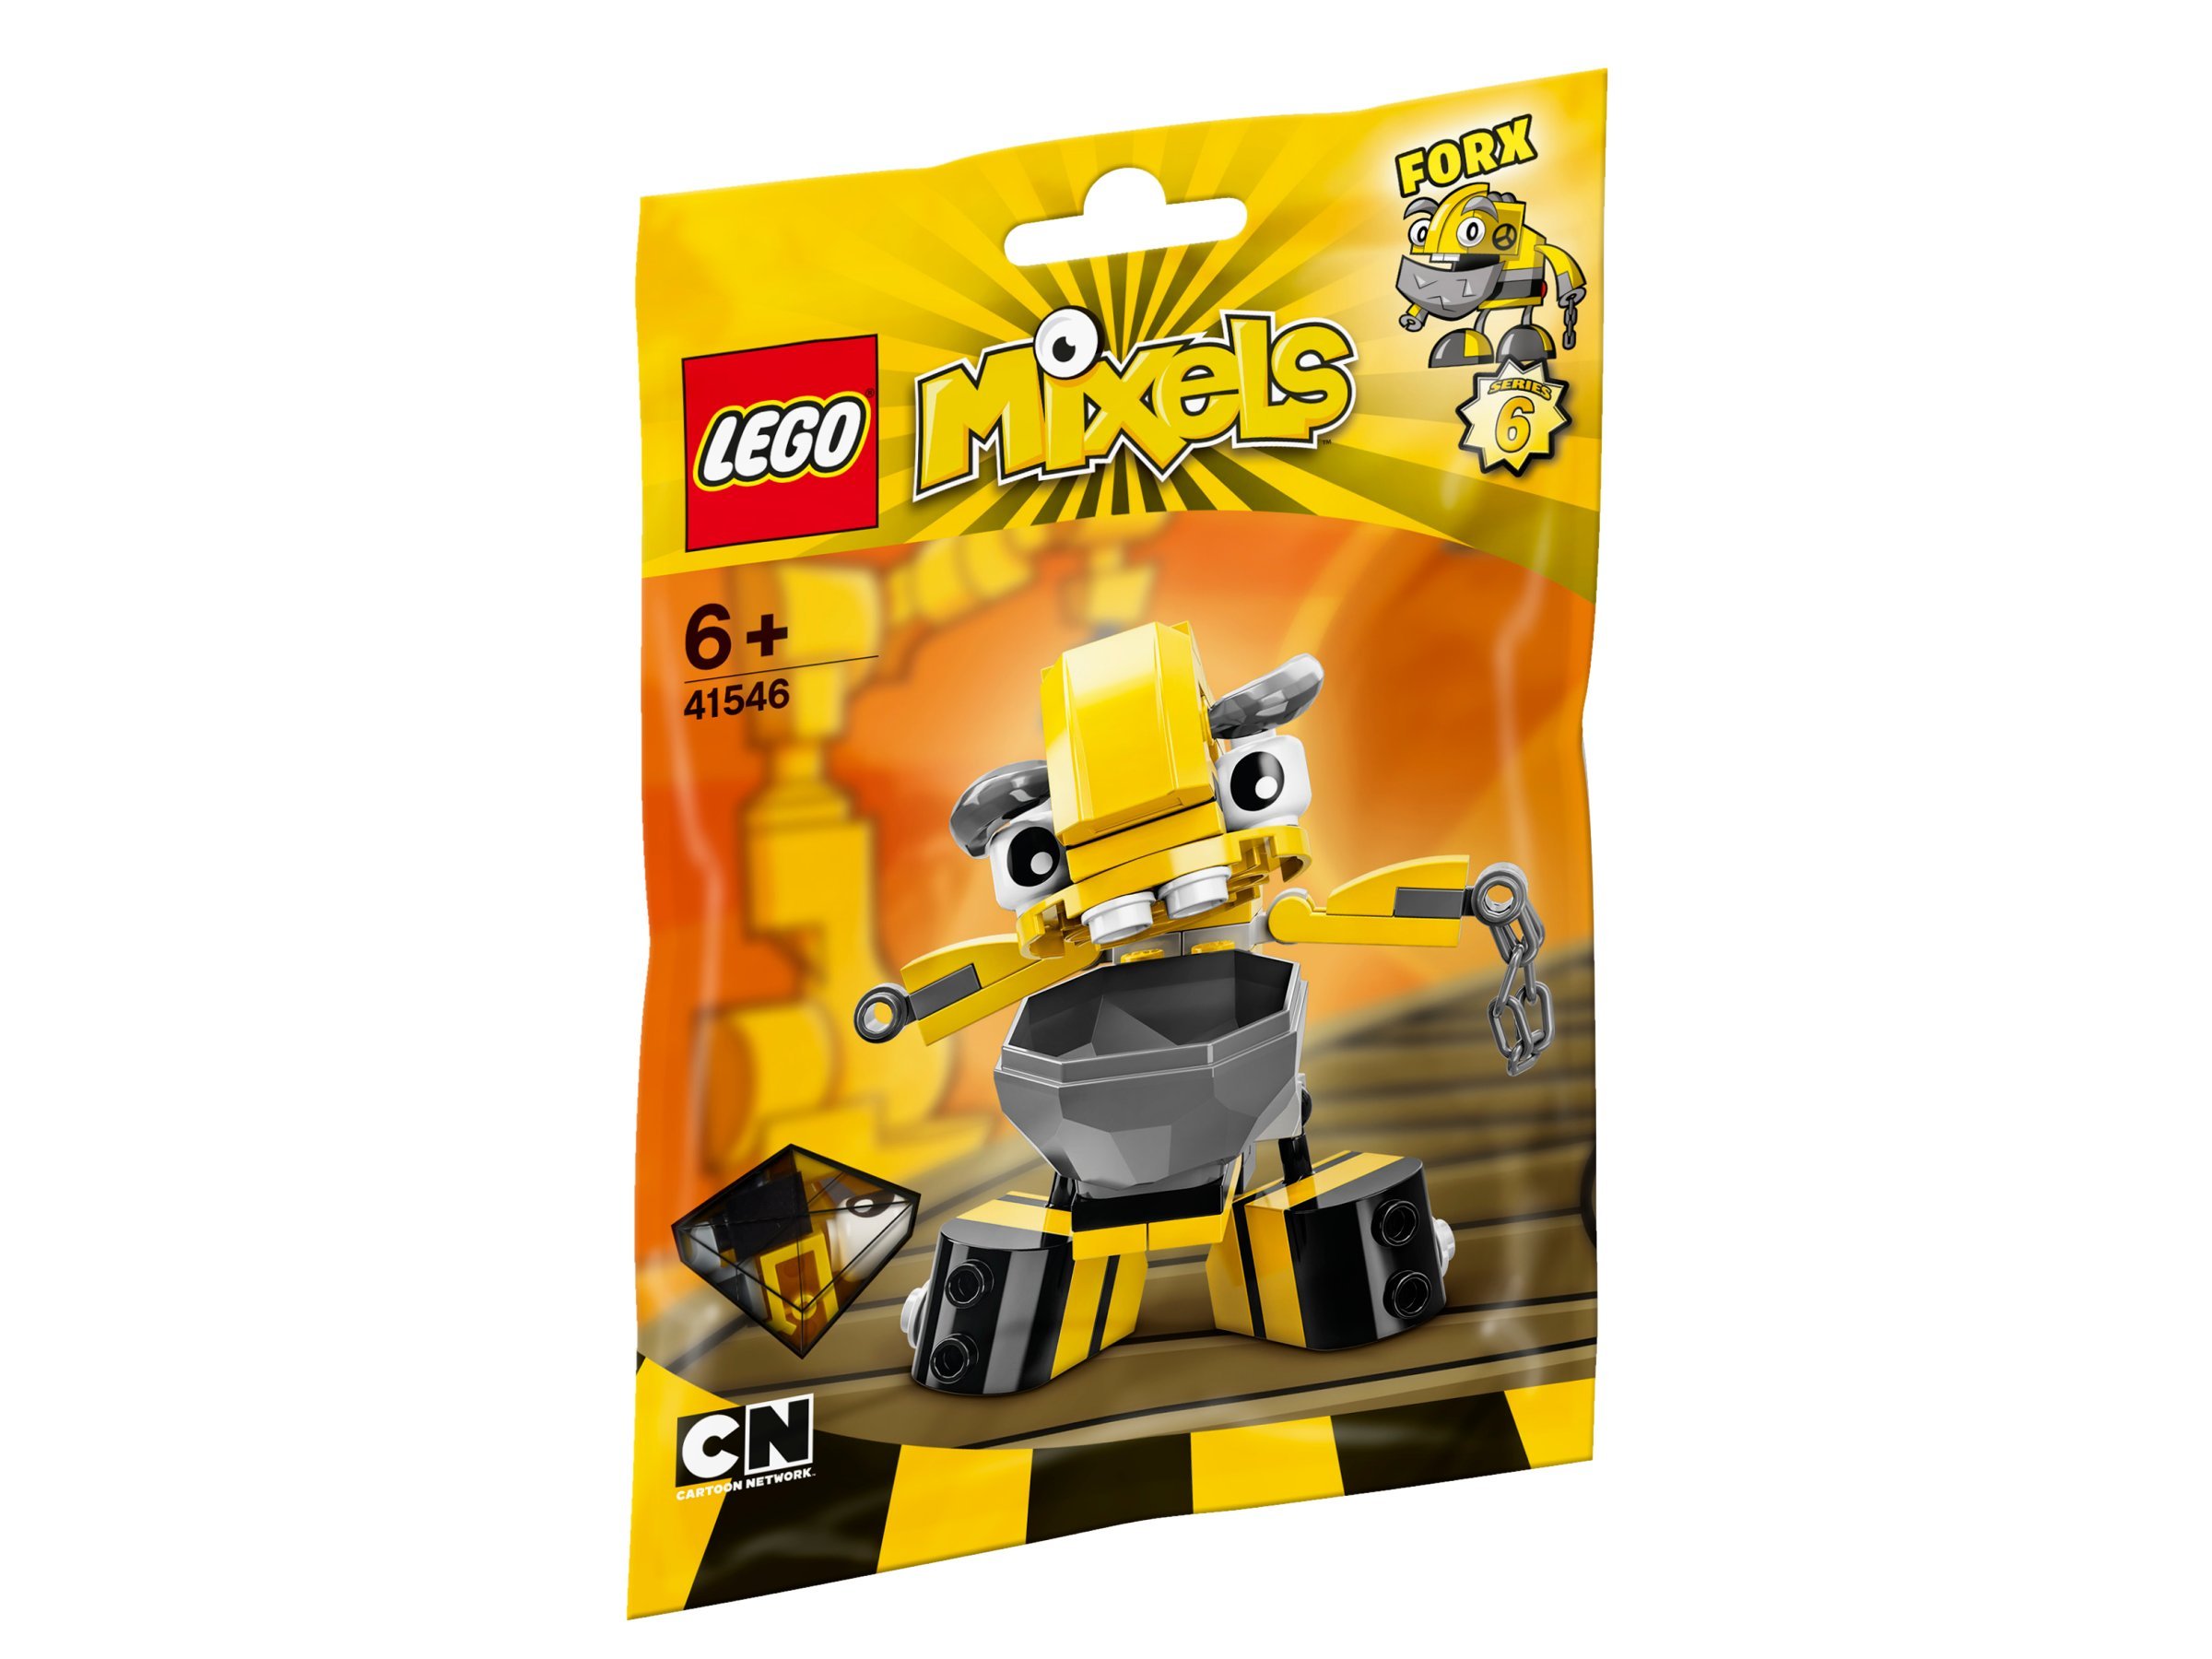 Lego Mixels Series Forx Set